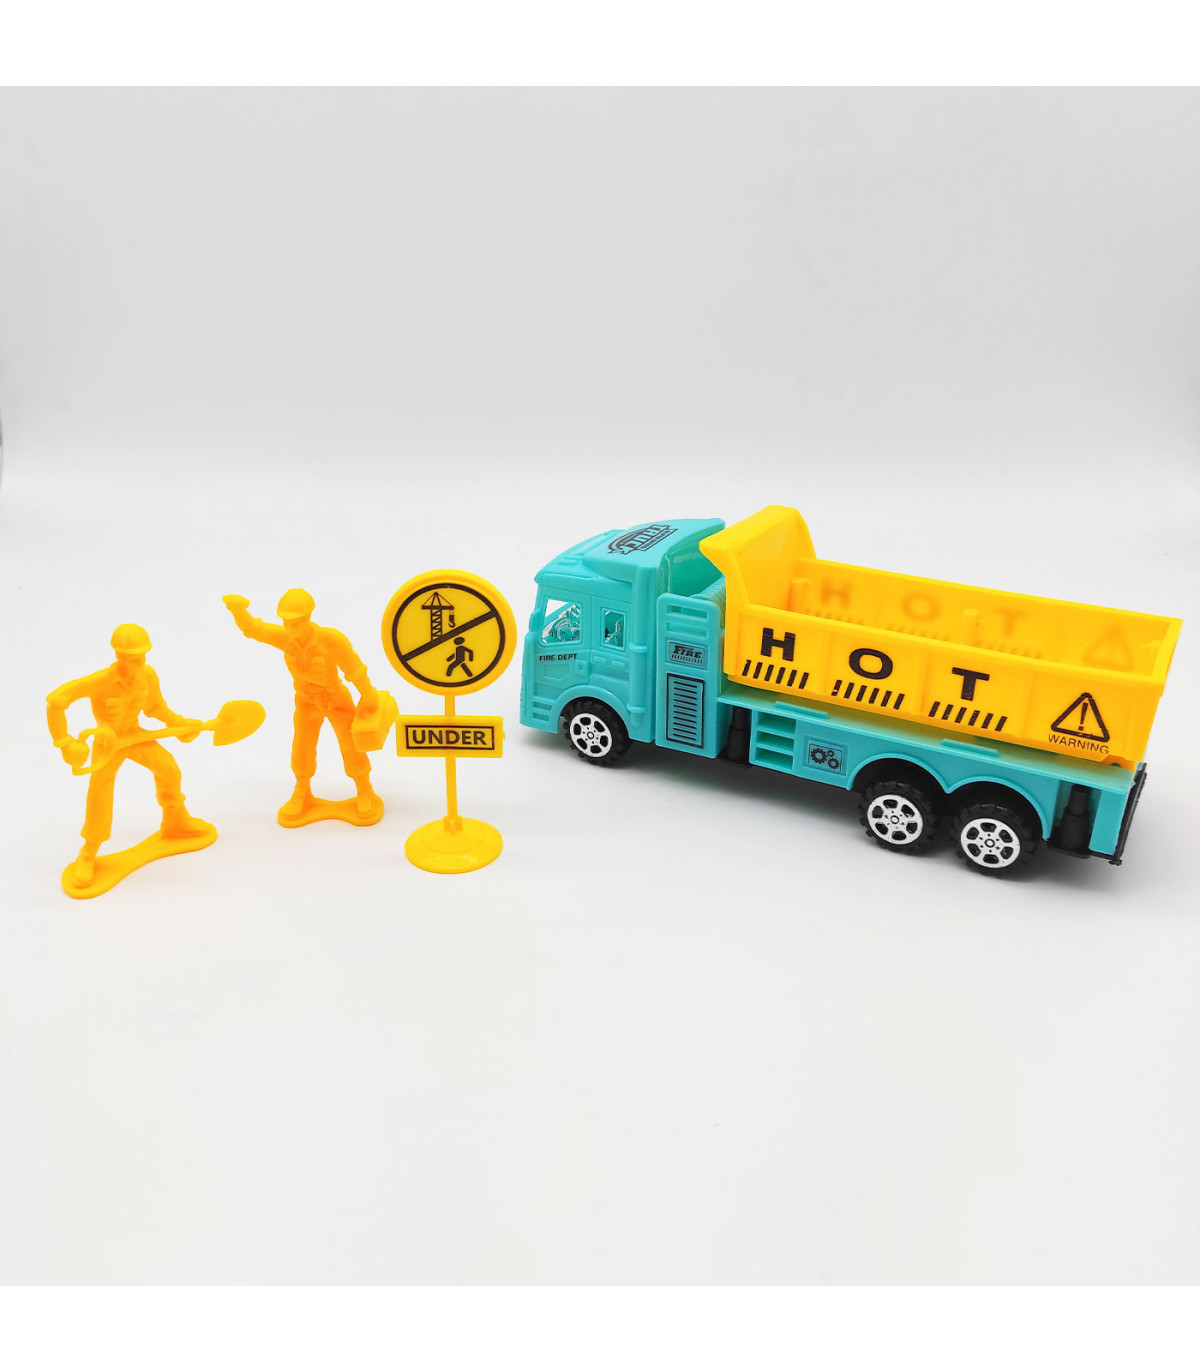 Conjunto de juguetes de set de figuras, camión, grua, señales, obra, juego construcción para niños